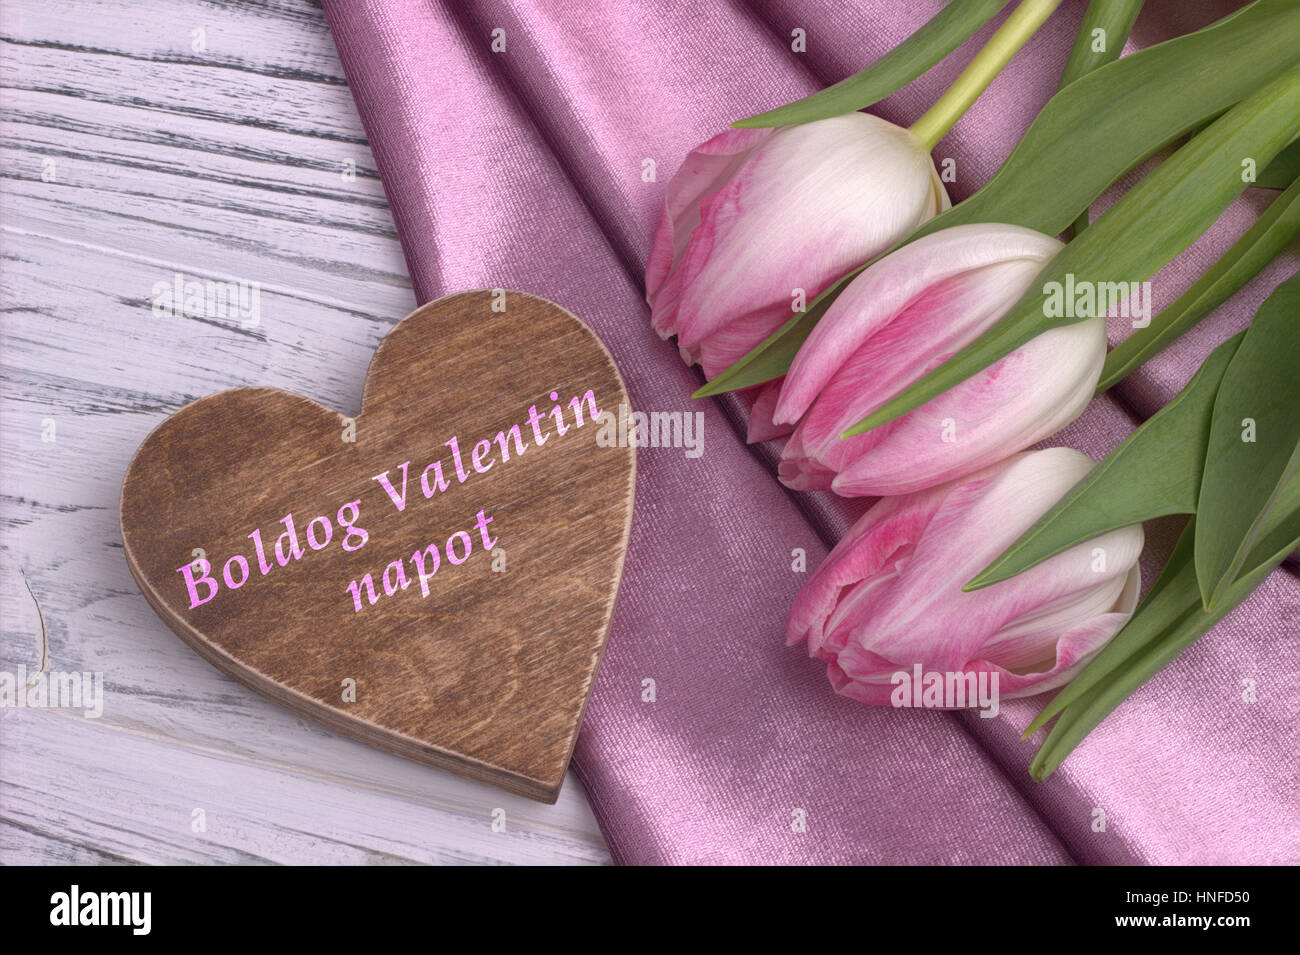 La Saint-Valentin avec la vie toujours élégante tulip rose fleurs rose tissu brillant en forme de coeur et signe sur fond en bois blanc et le lettrage heureux Valen Banque D'Images